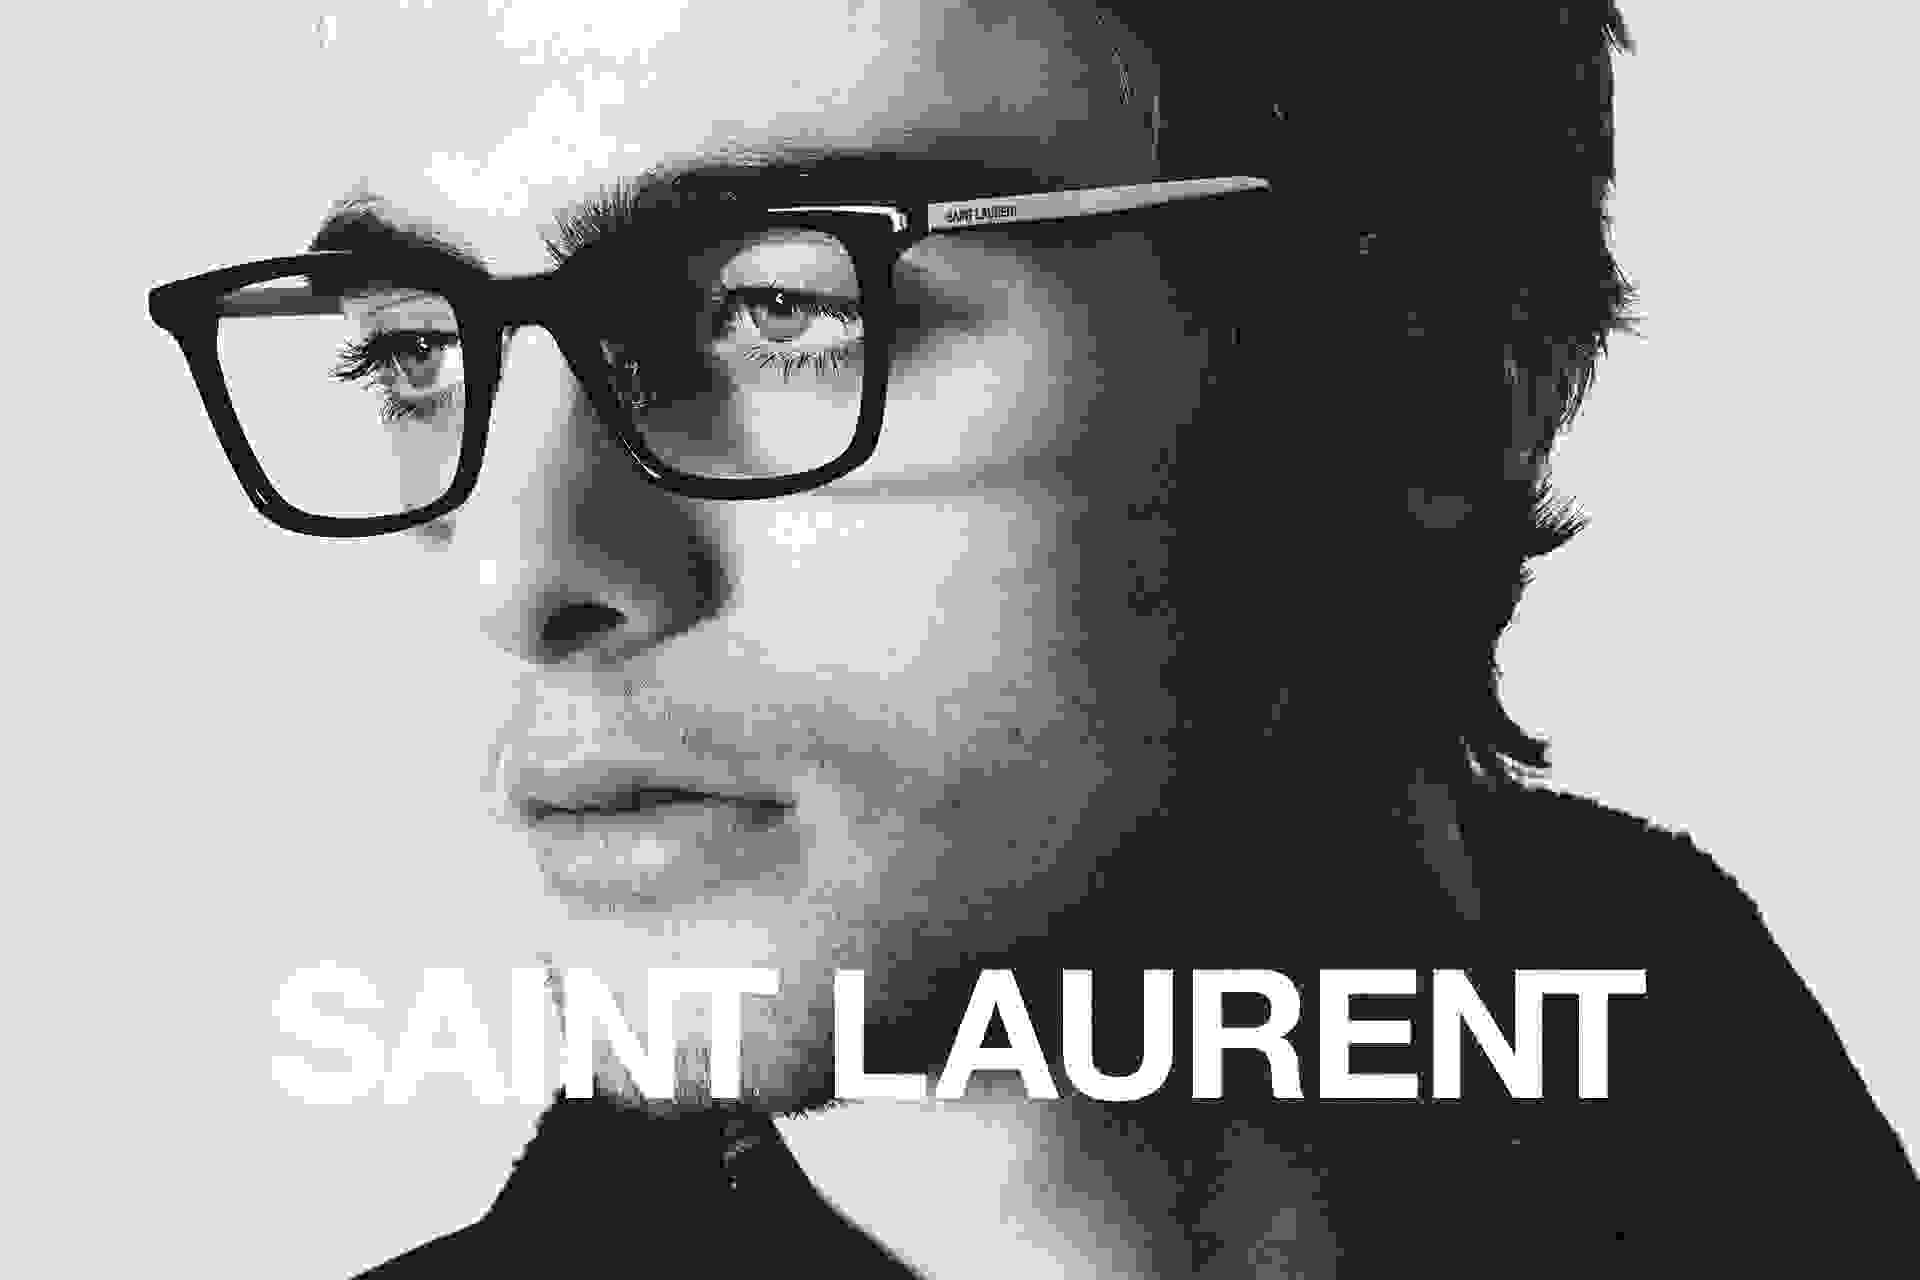 Schwarz-weiße Nahaufnahme von einem Male Model, das eine Saint Laurent Korrekturbrille trägt.